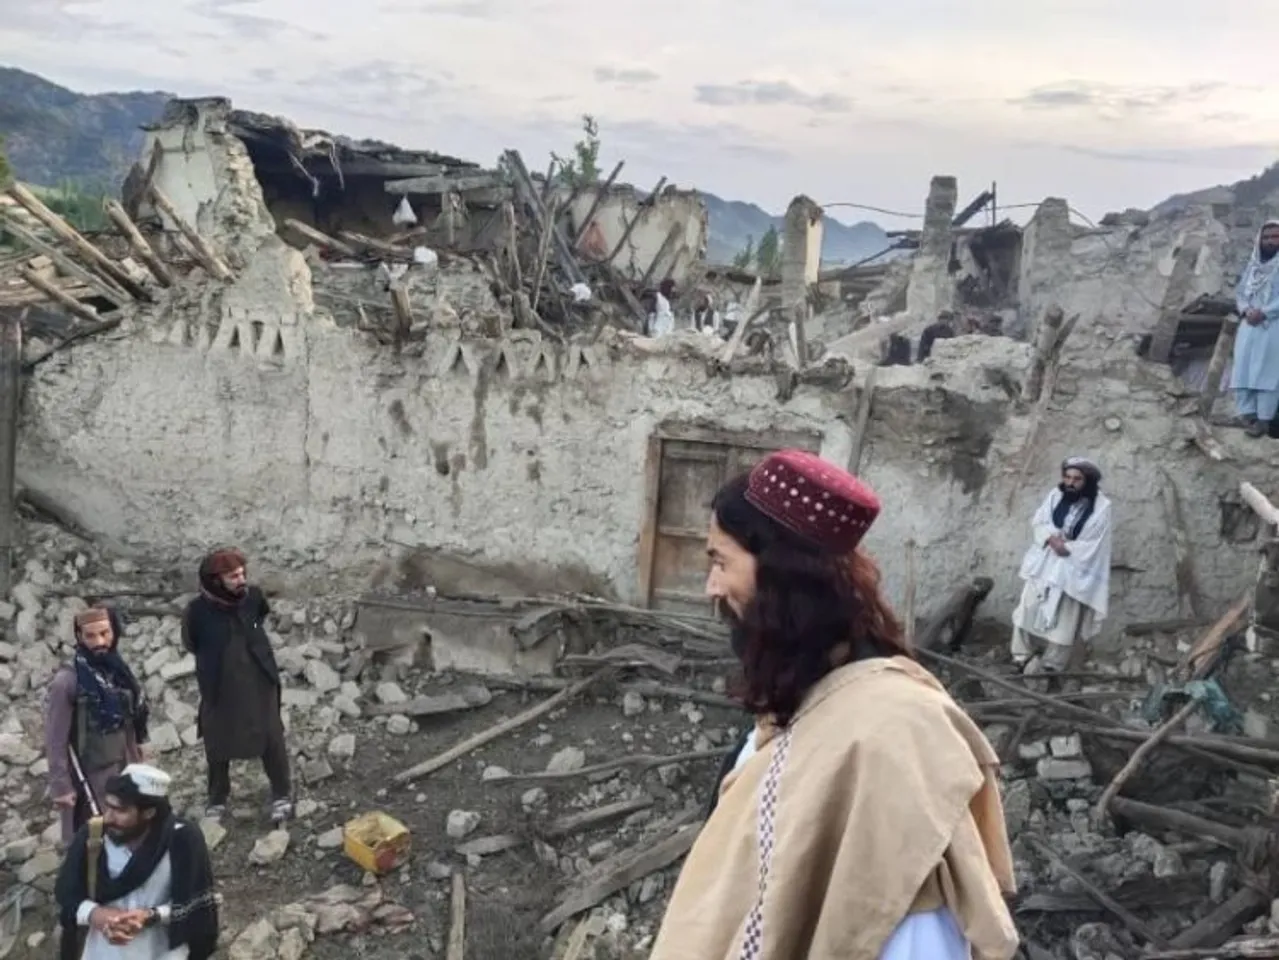 Eastern Afghanistan earthquake kills at least 255 people